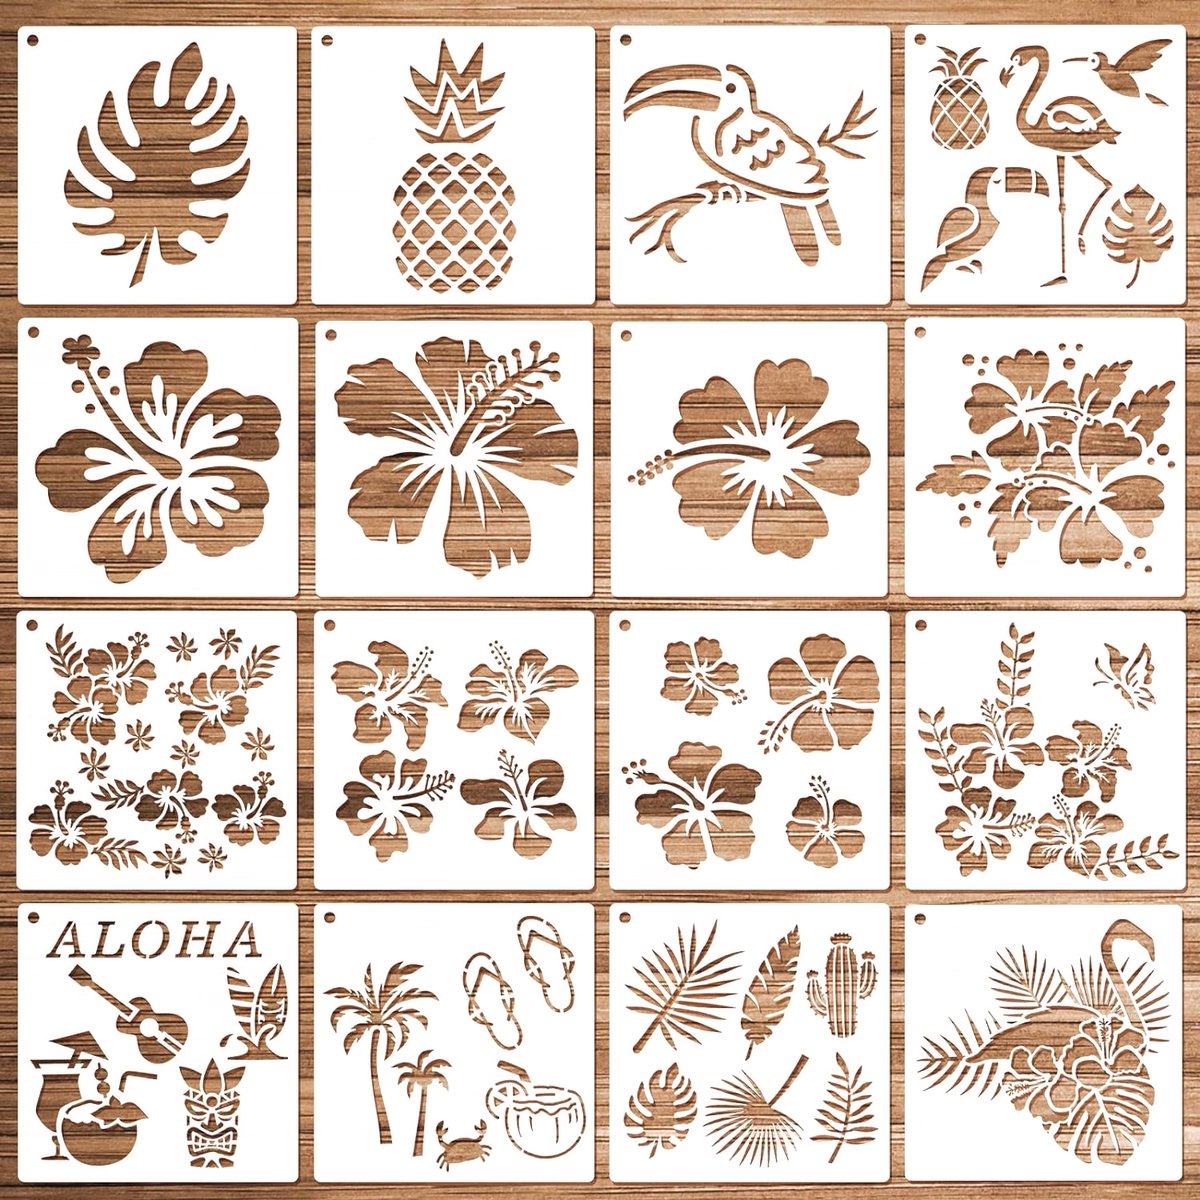 HOWAF 16 stuks Hawaï-themasjablonen om te schilderen, hibiscus, bloemen, ananas, tropische bladeren, ananasjablonen, schilderen, kunststof, stencilsjablonen voor scrapbooking, handwerk, doe-het-zelf